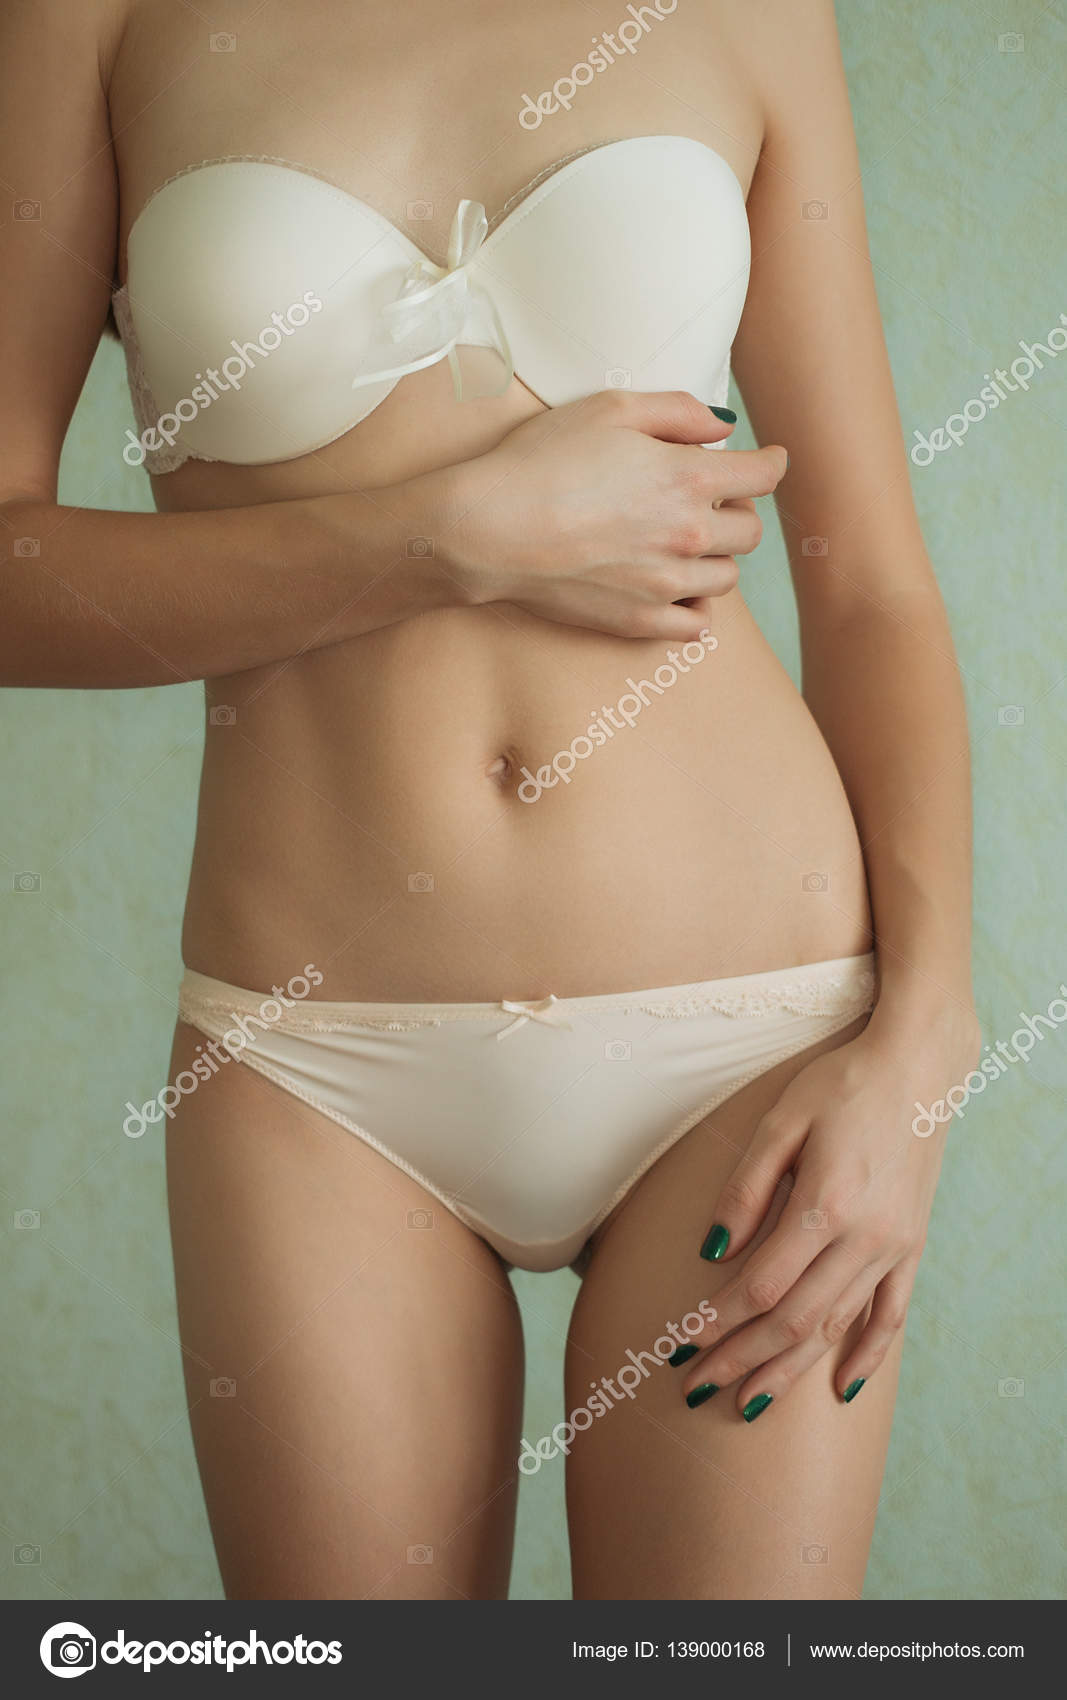 Ass sexy sexy curves girl butt